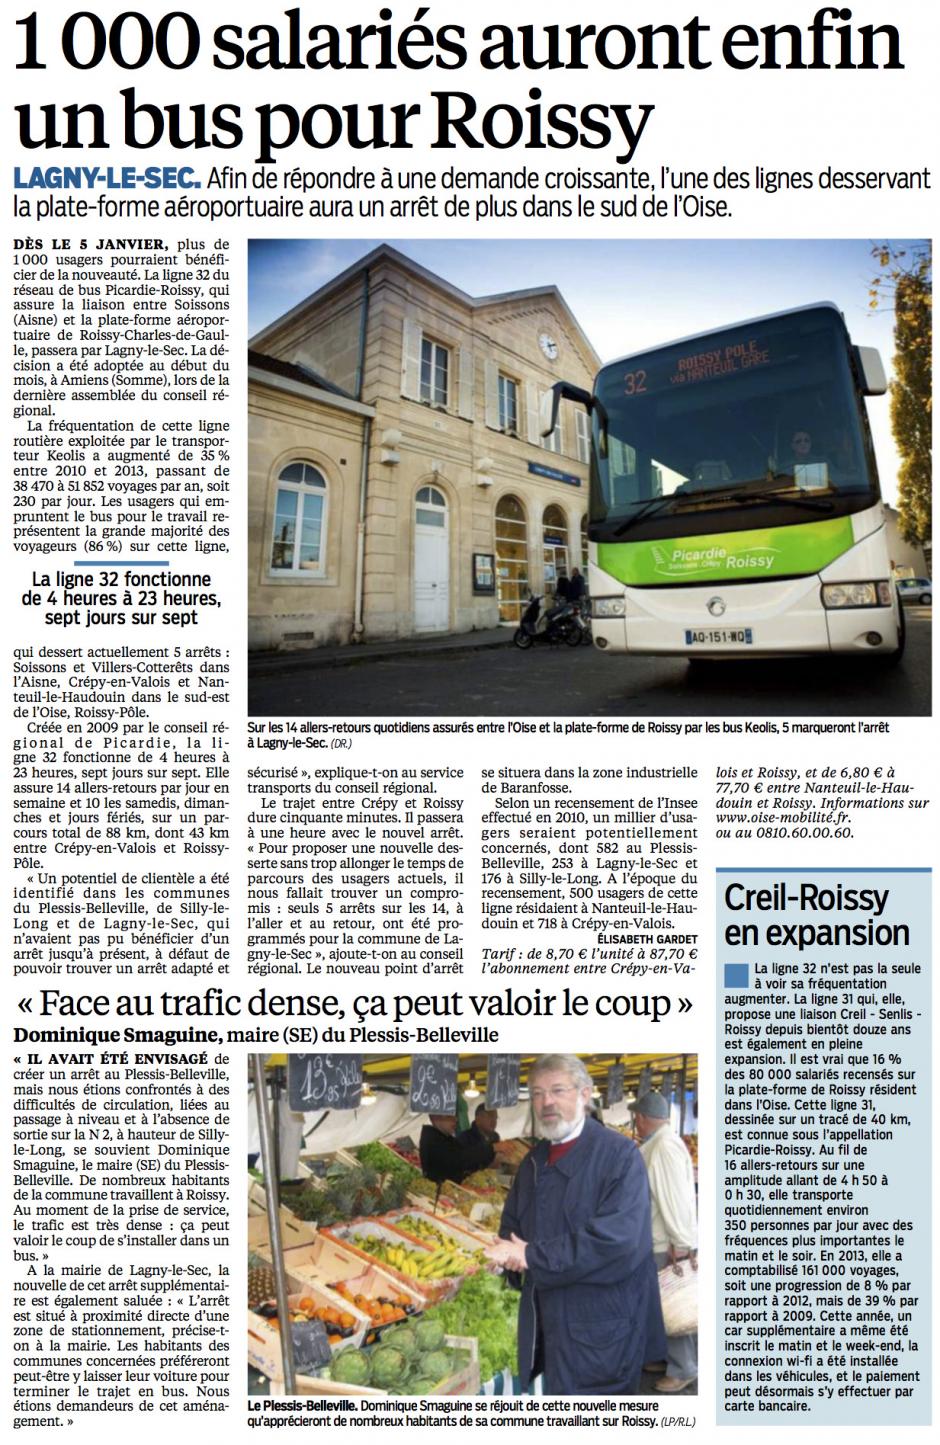 20141208-LeP-Lagny-le-Sec-1 000 salariés auront enfin un bus pour Roissy